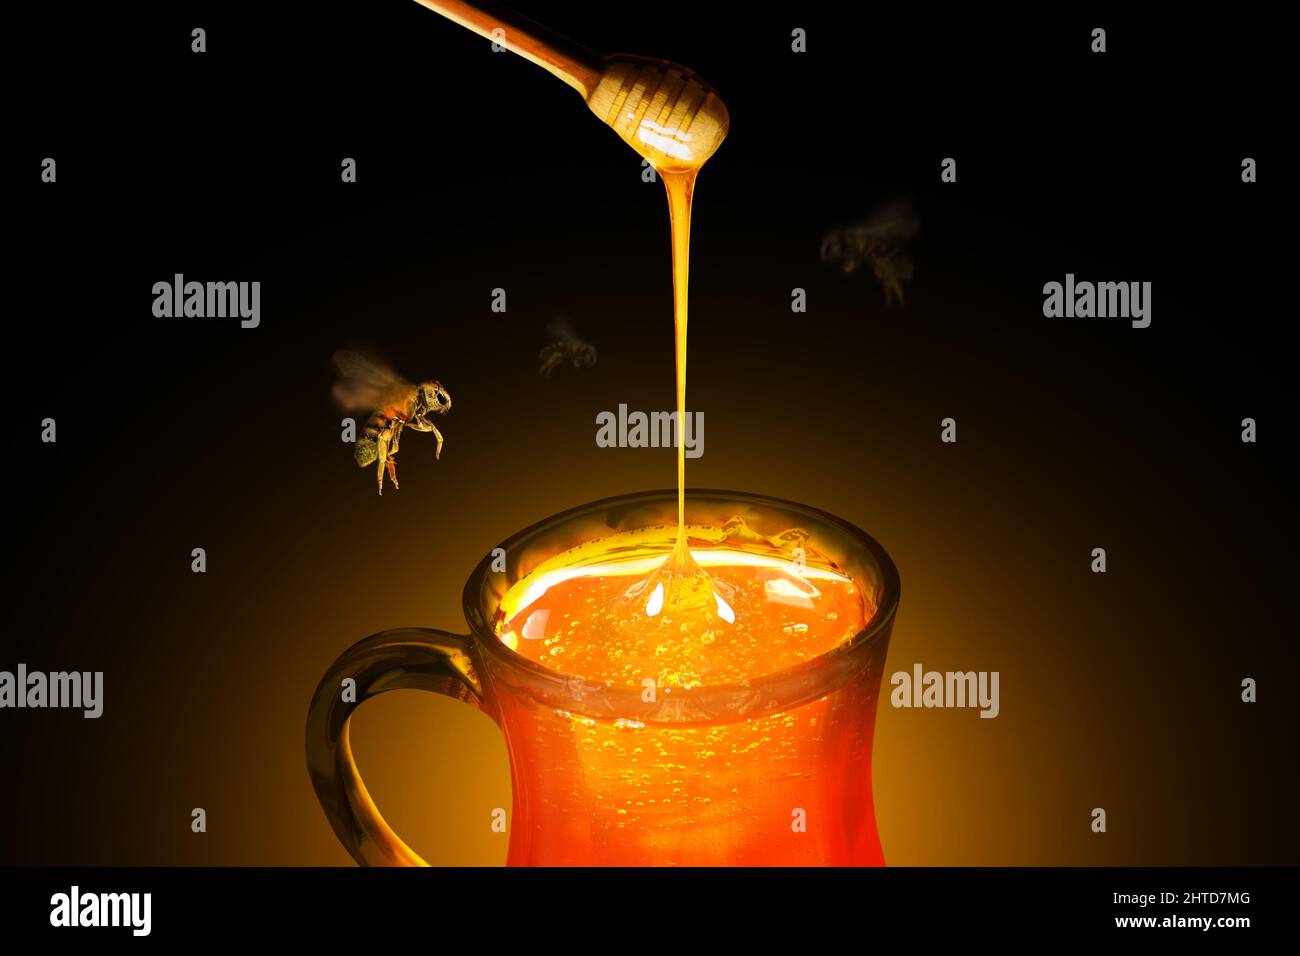 Taza de cristal llena de miel pura y un penetrador con abejas volando alrededor Foto de stock